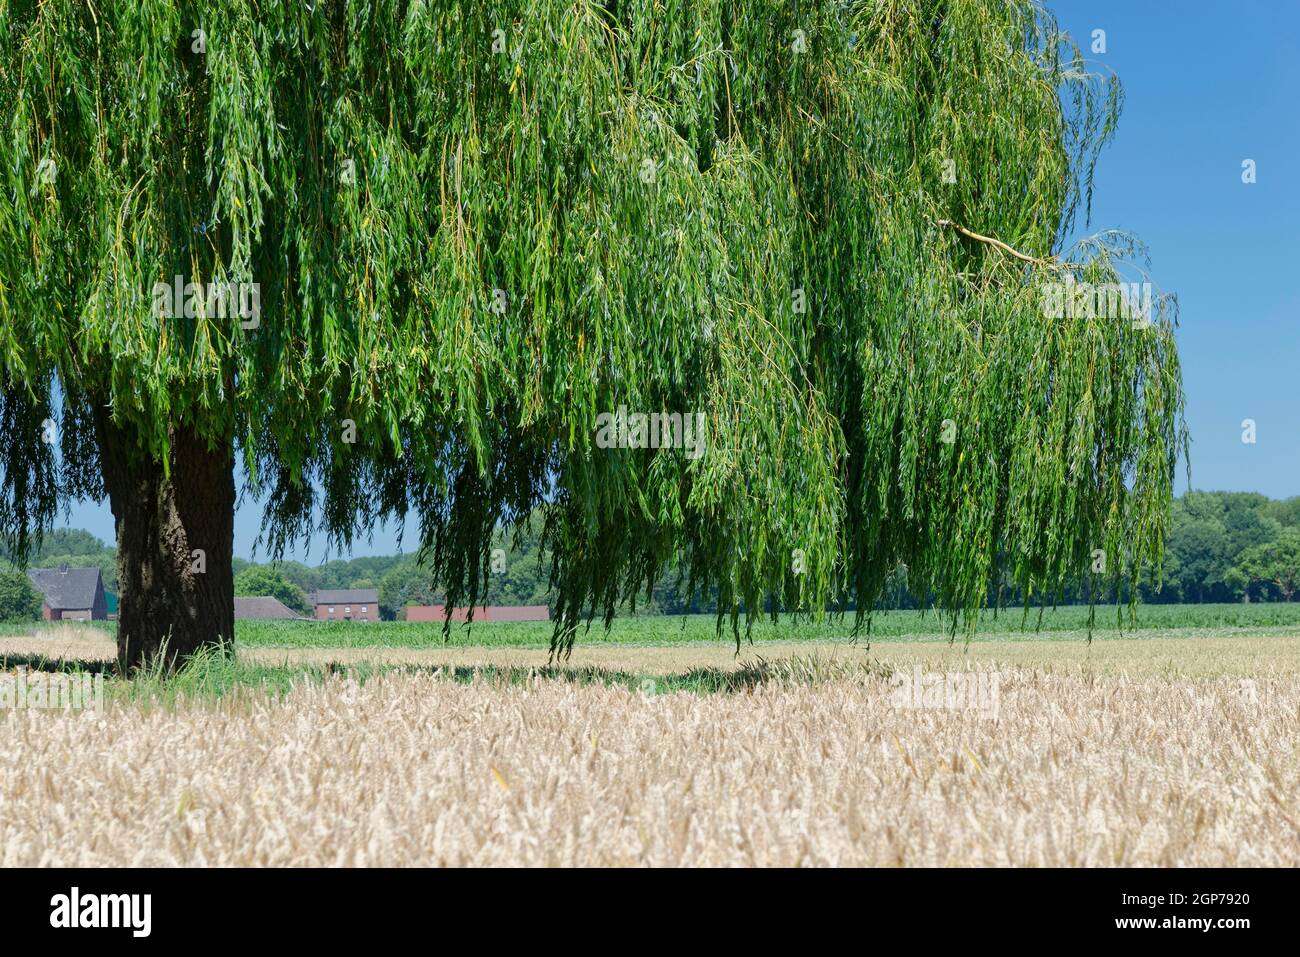 Saule pleurant (Salix babylonica) dans le champ de blé, Wachtendonk, district de Kleve, Rhénanie-du-Nord-Westphalie, Allemagne Banque D'Images